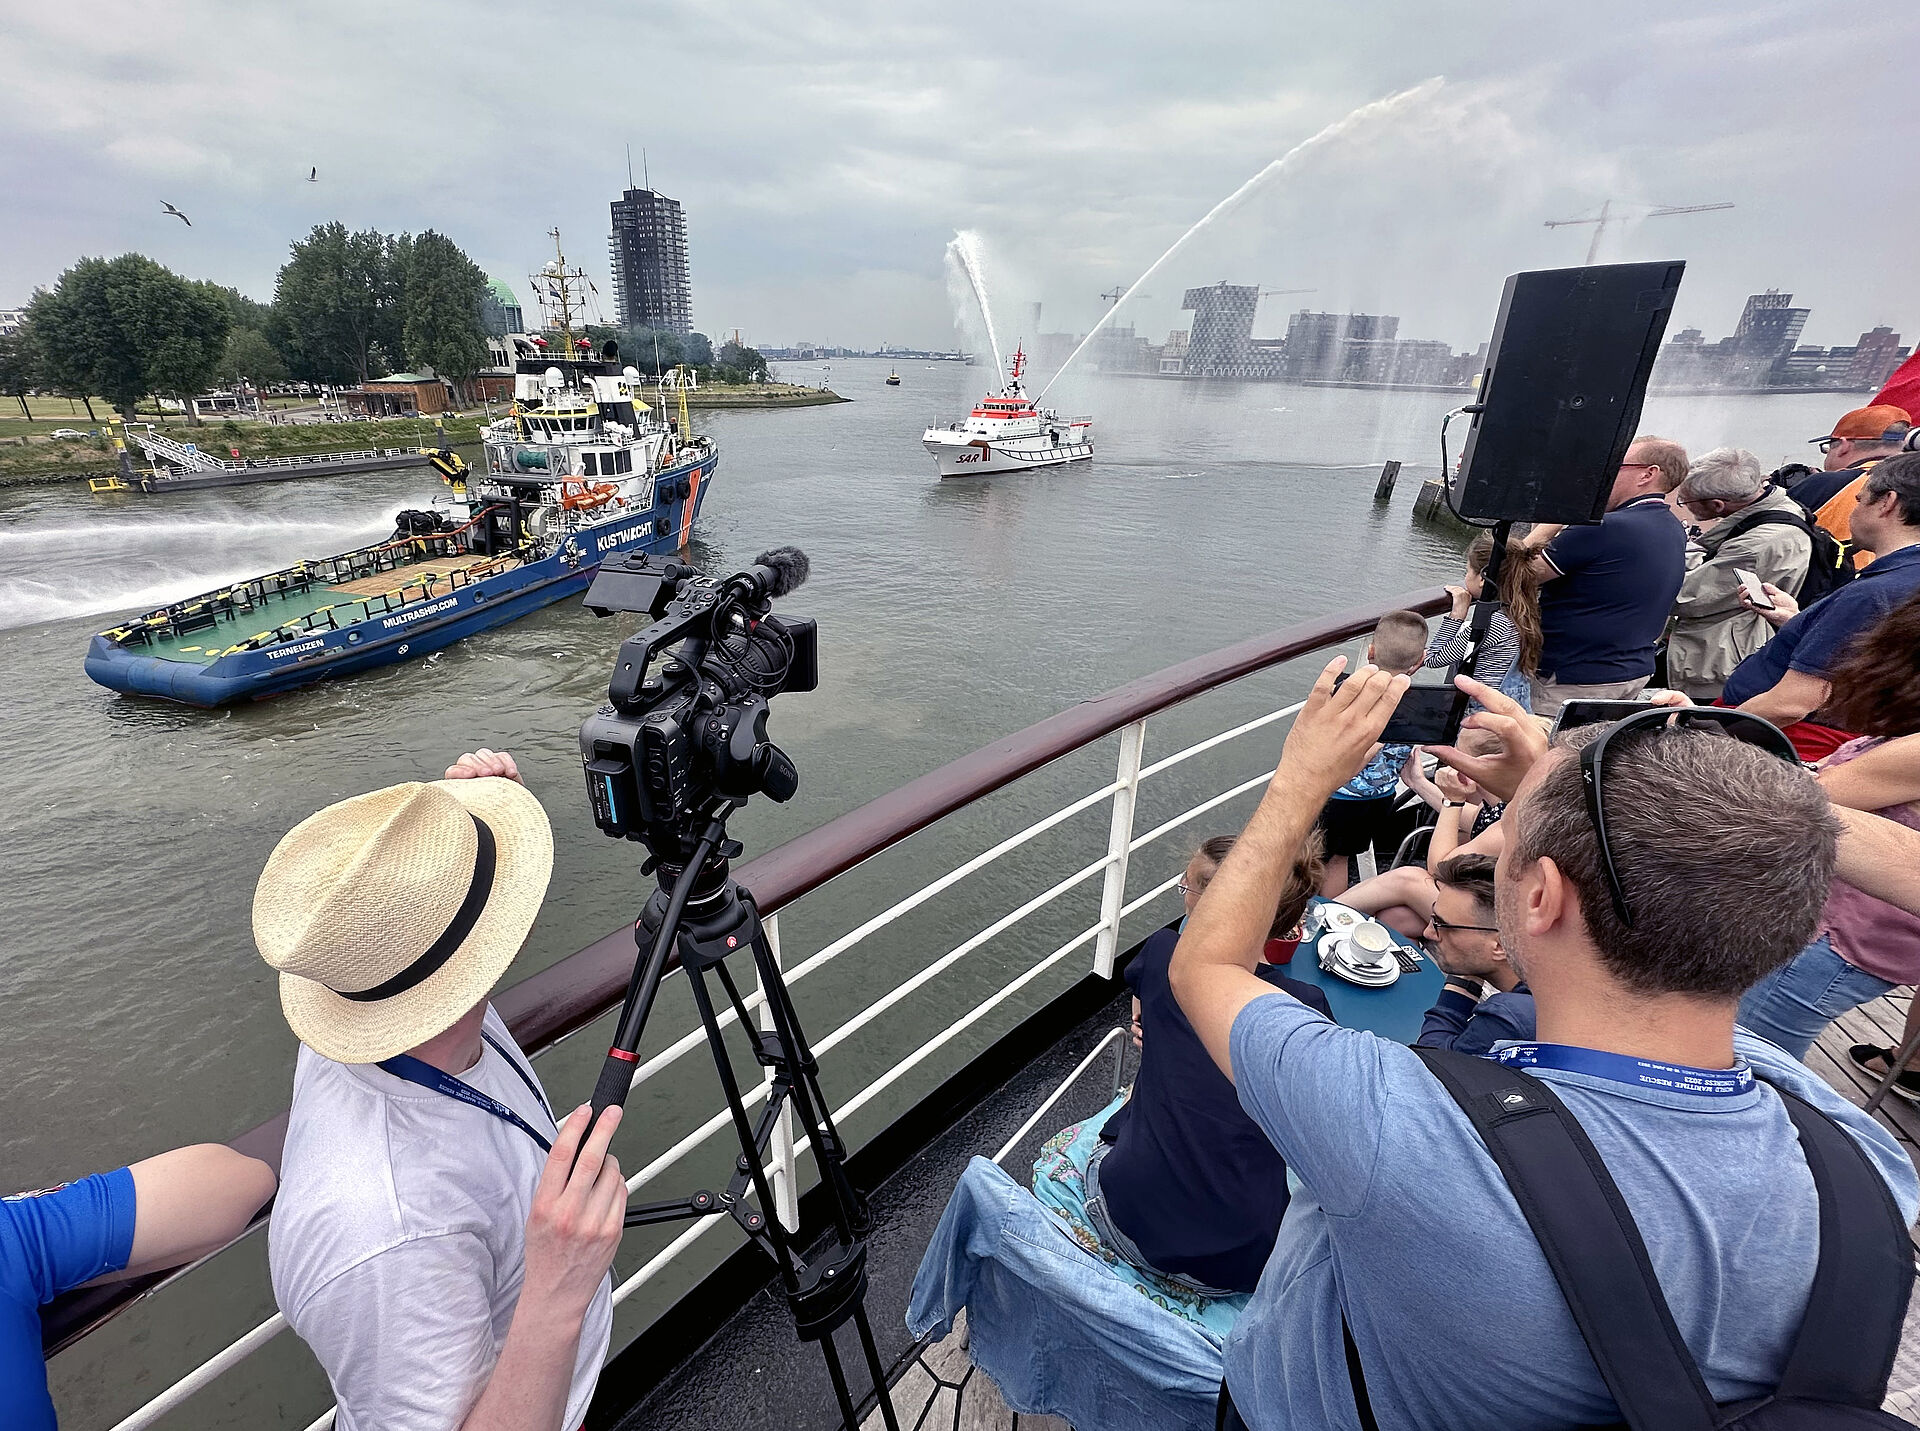 Viele Kongressteilnehmer, Schaulustige und Medien beobachten die Demonstrationen im Rotterdamer Hafen.